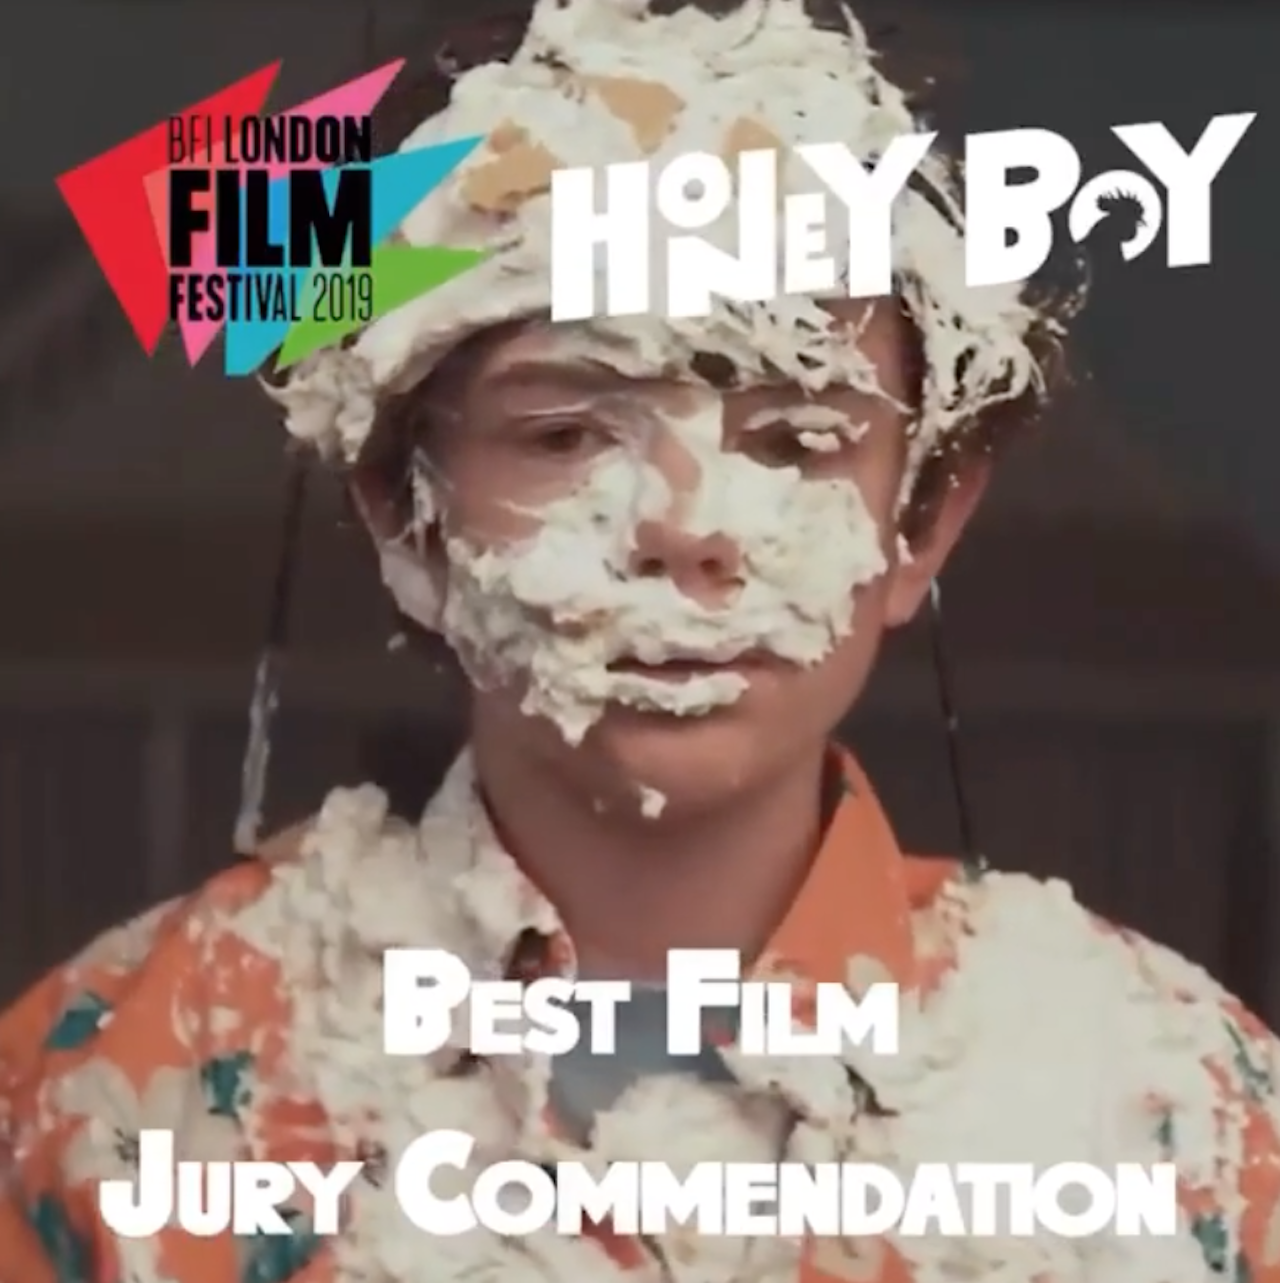 London Film Festival Jury Commendation for Alma's 'Honey Boy'!